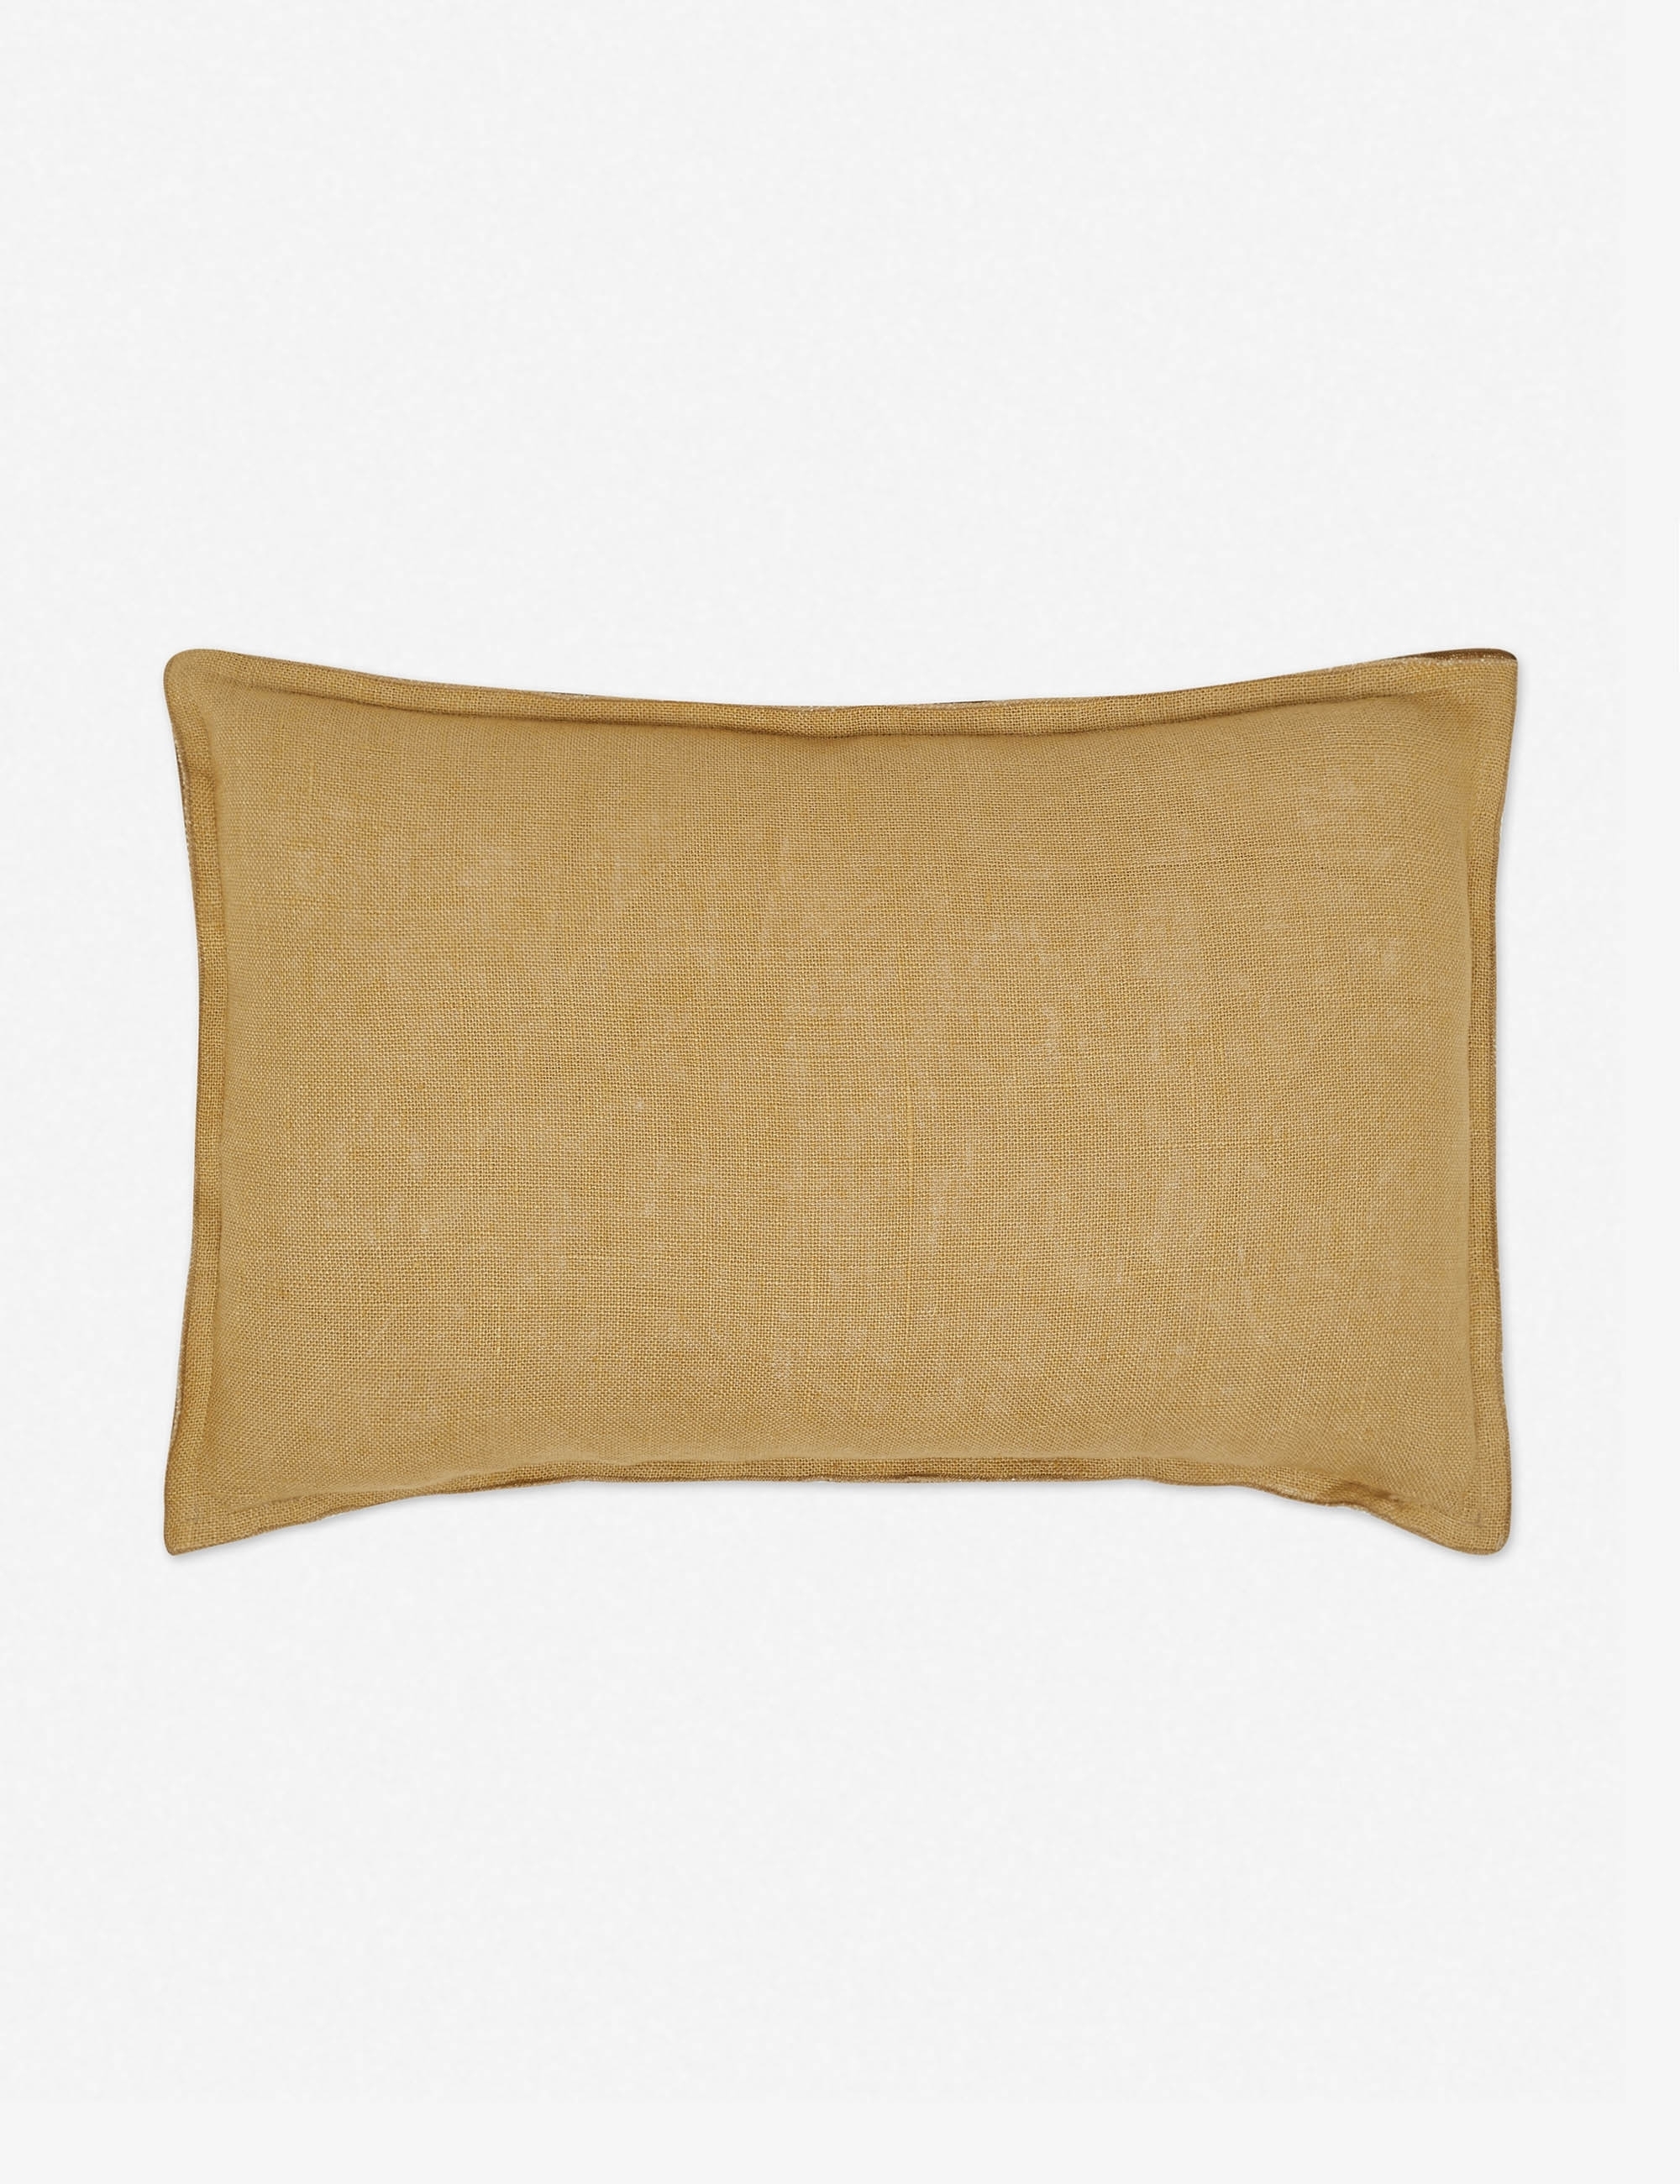 Arlo Linen Lumbar Pillow, Marigold - Image 0